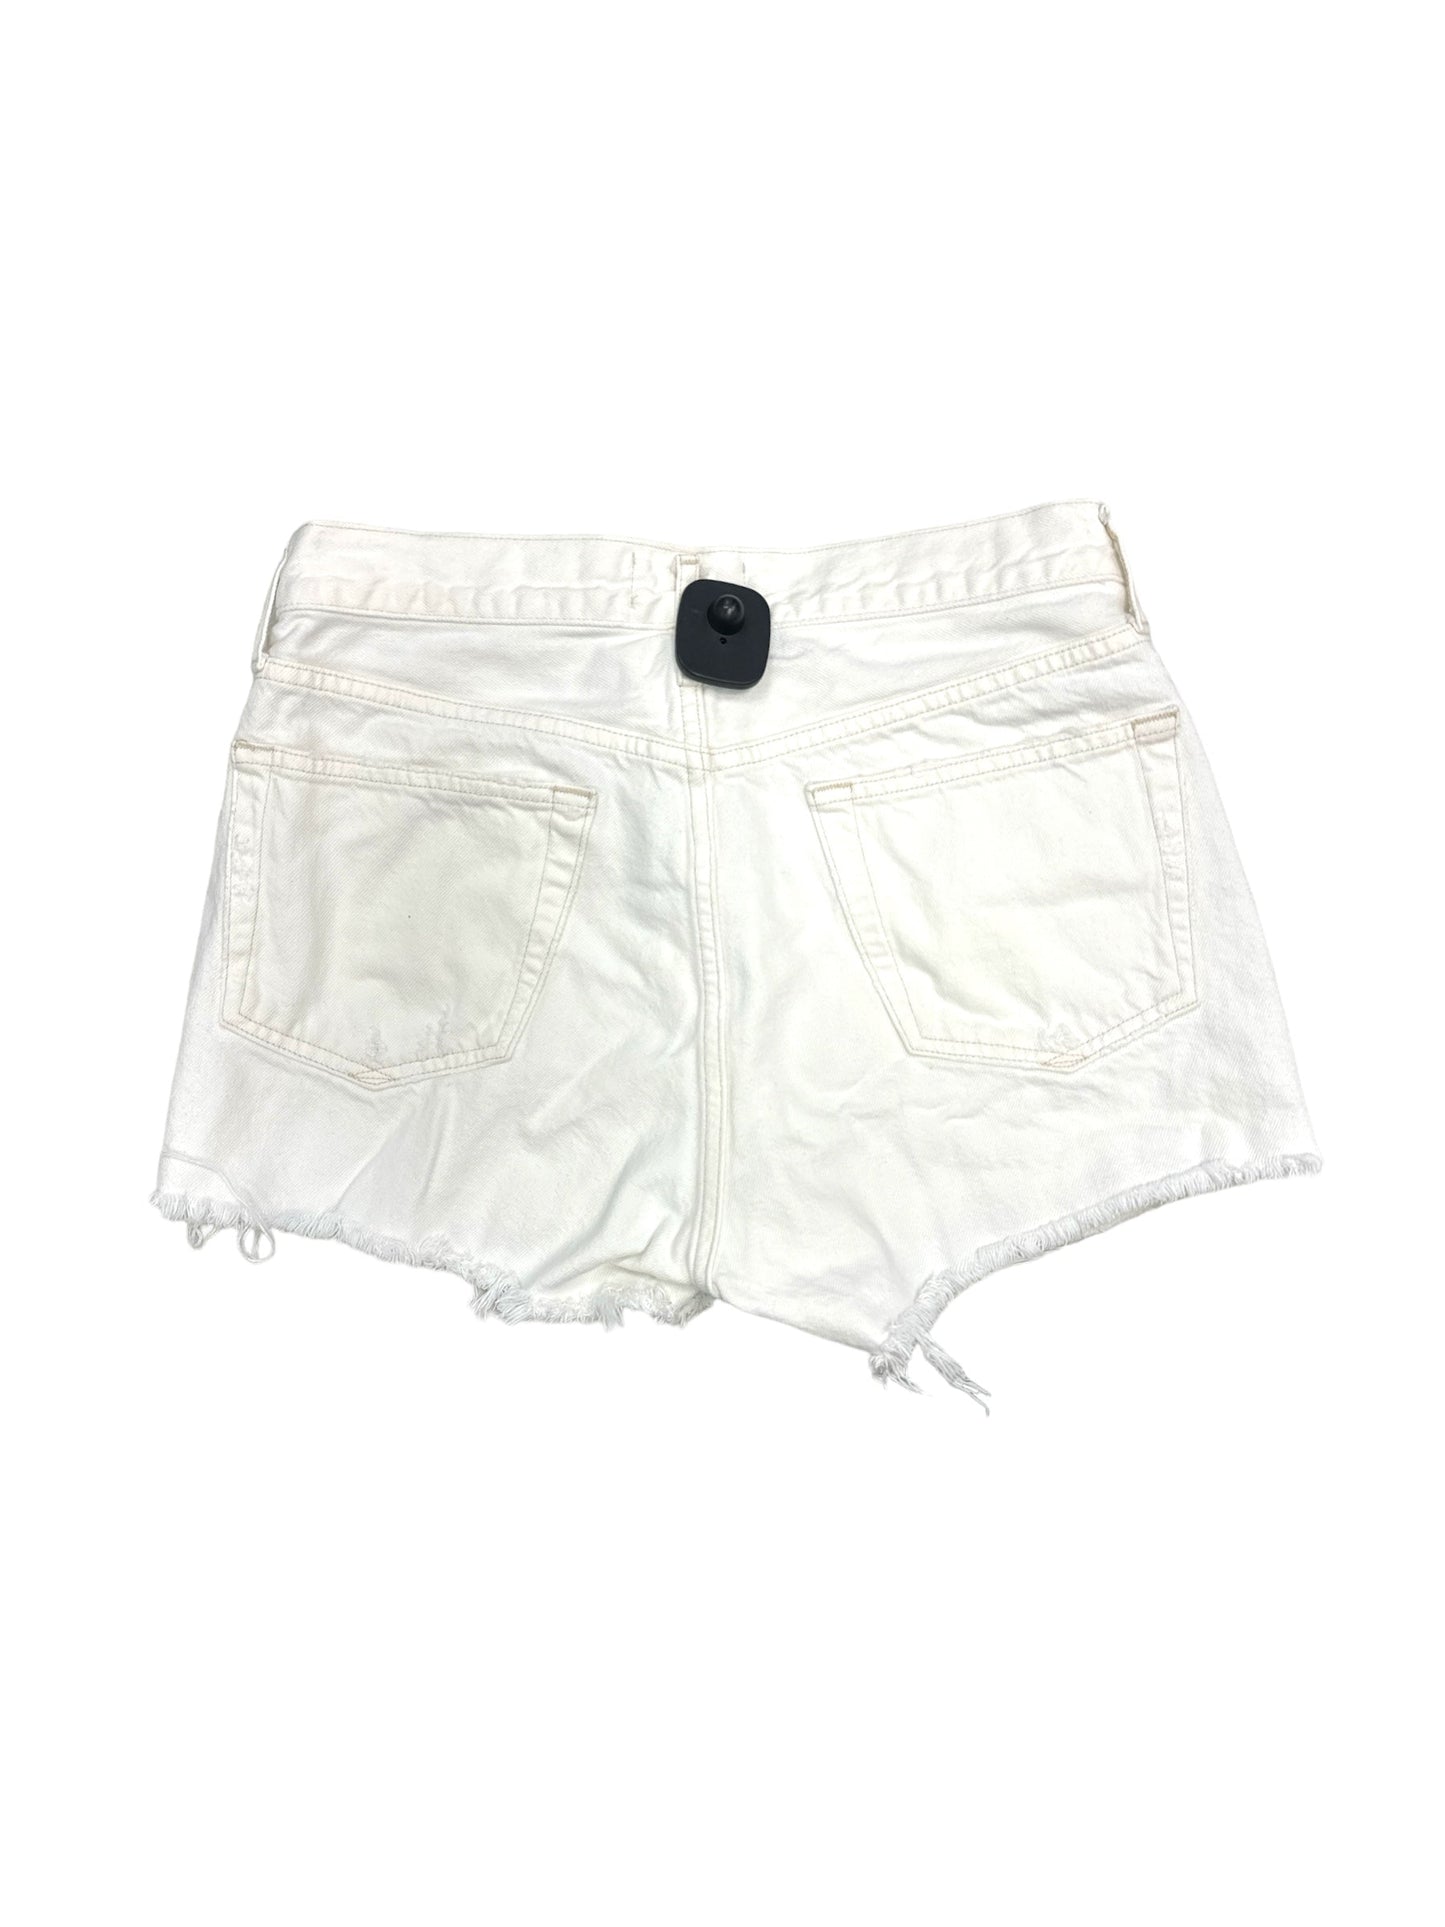 White Shorts Agolde, Size 4